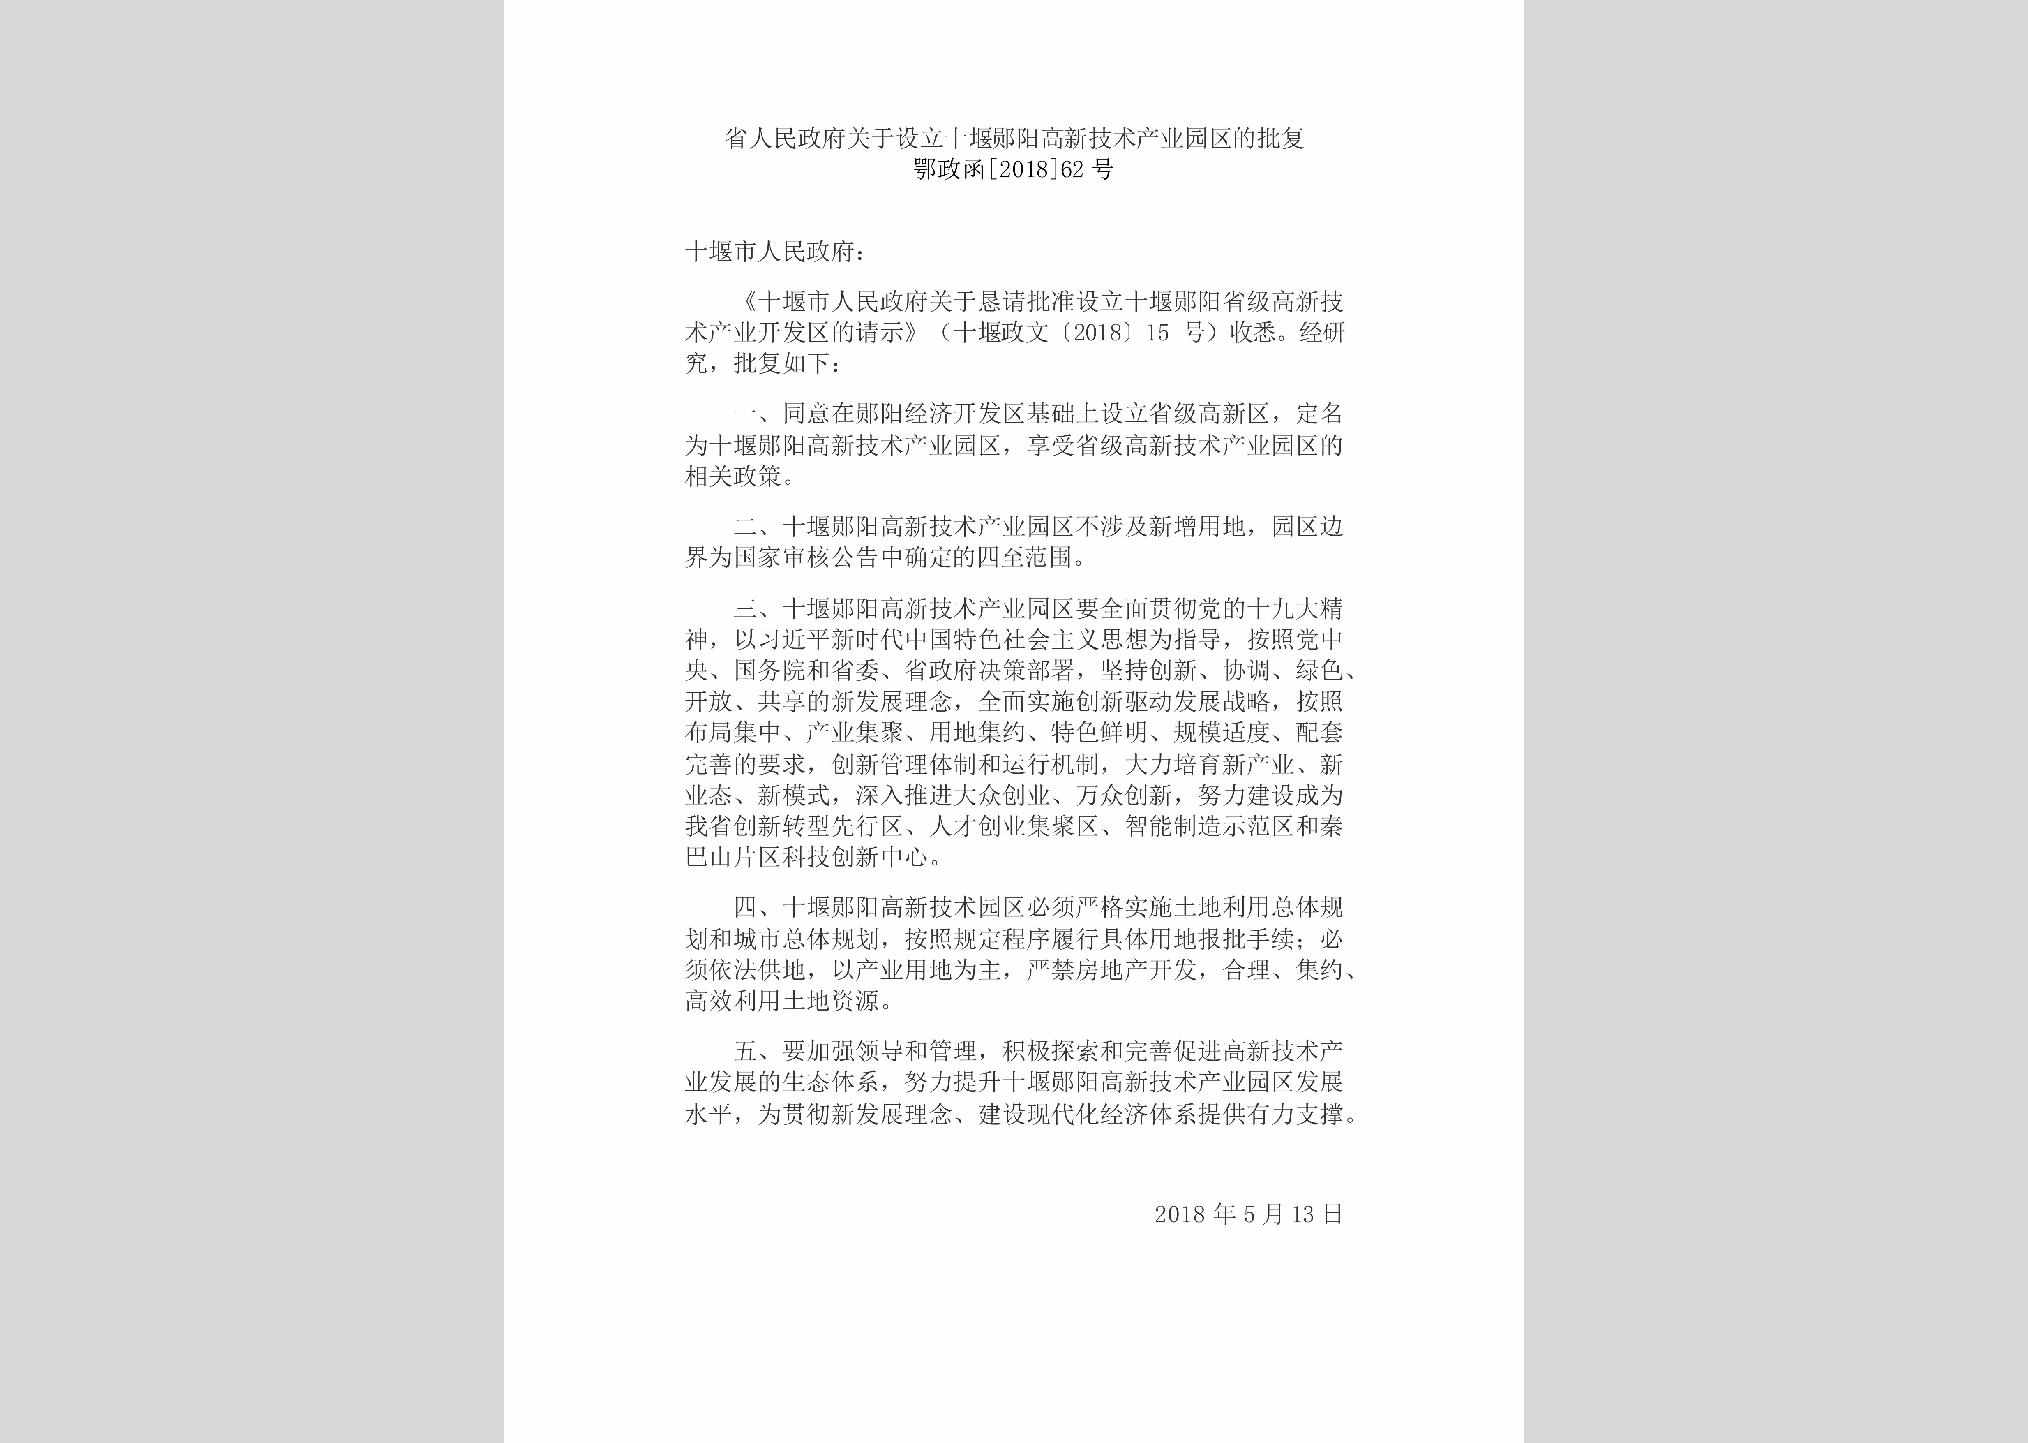 鄂政函[2018]62号：省人民政府关于设立十堰郧阳高新技术产业园区的批复